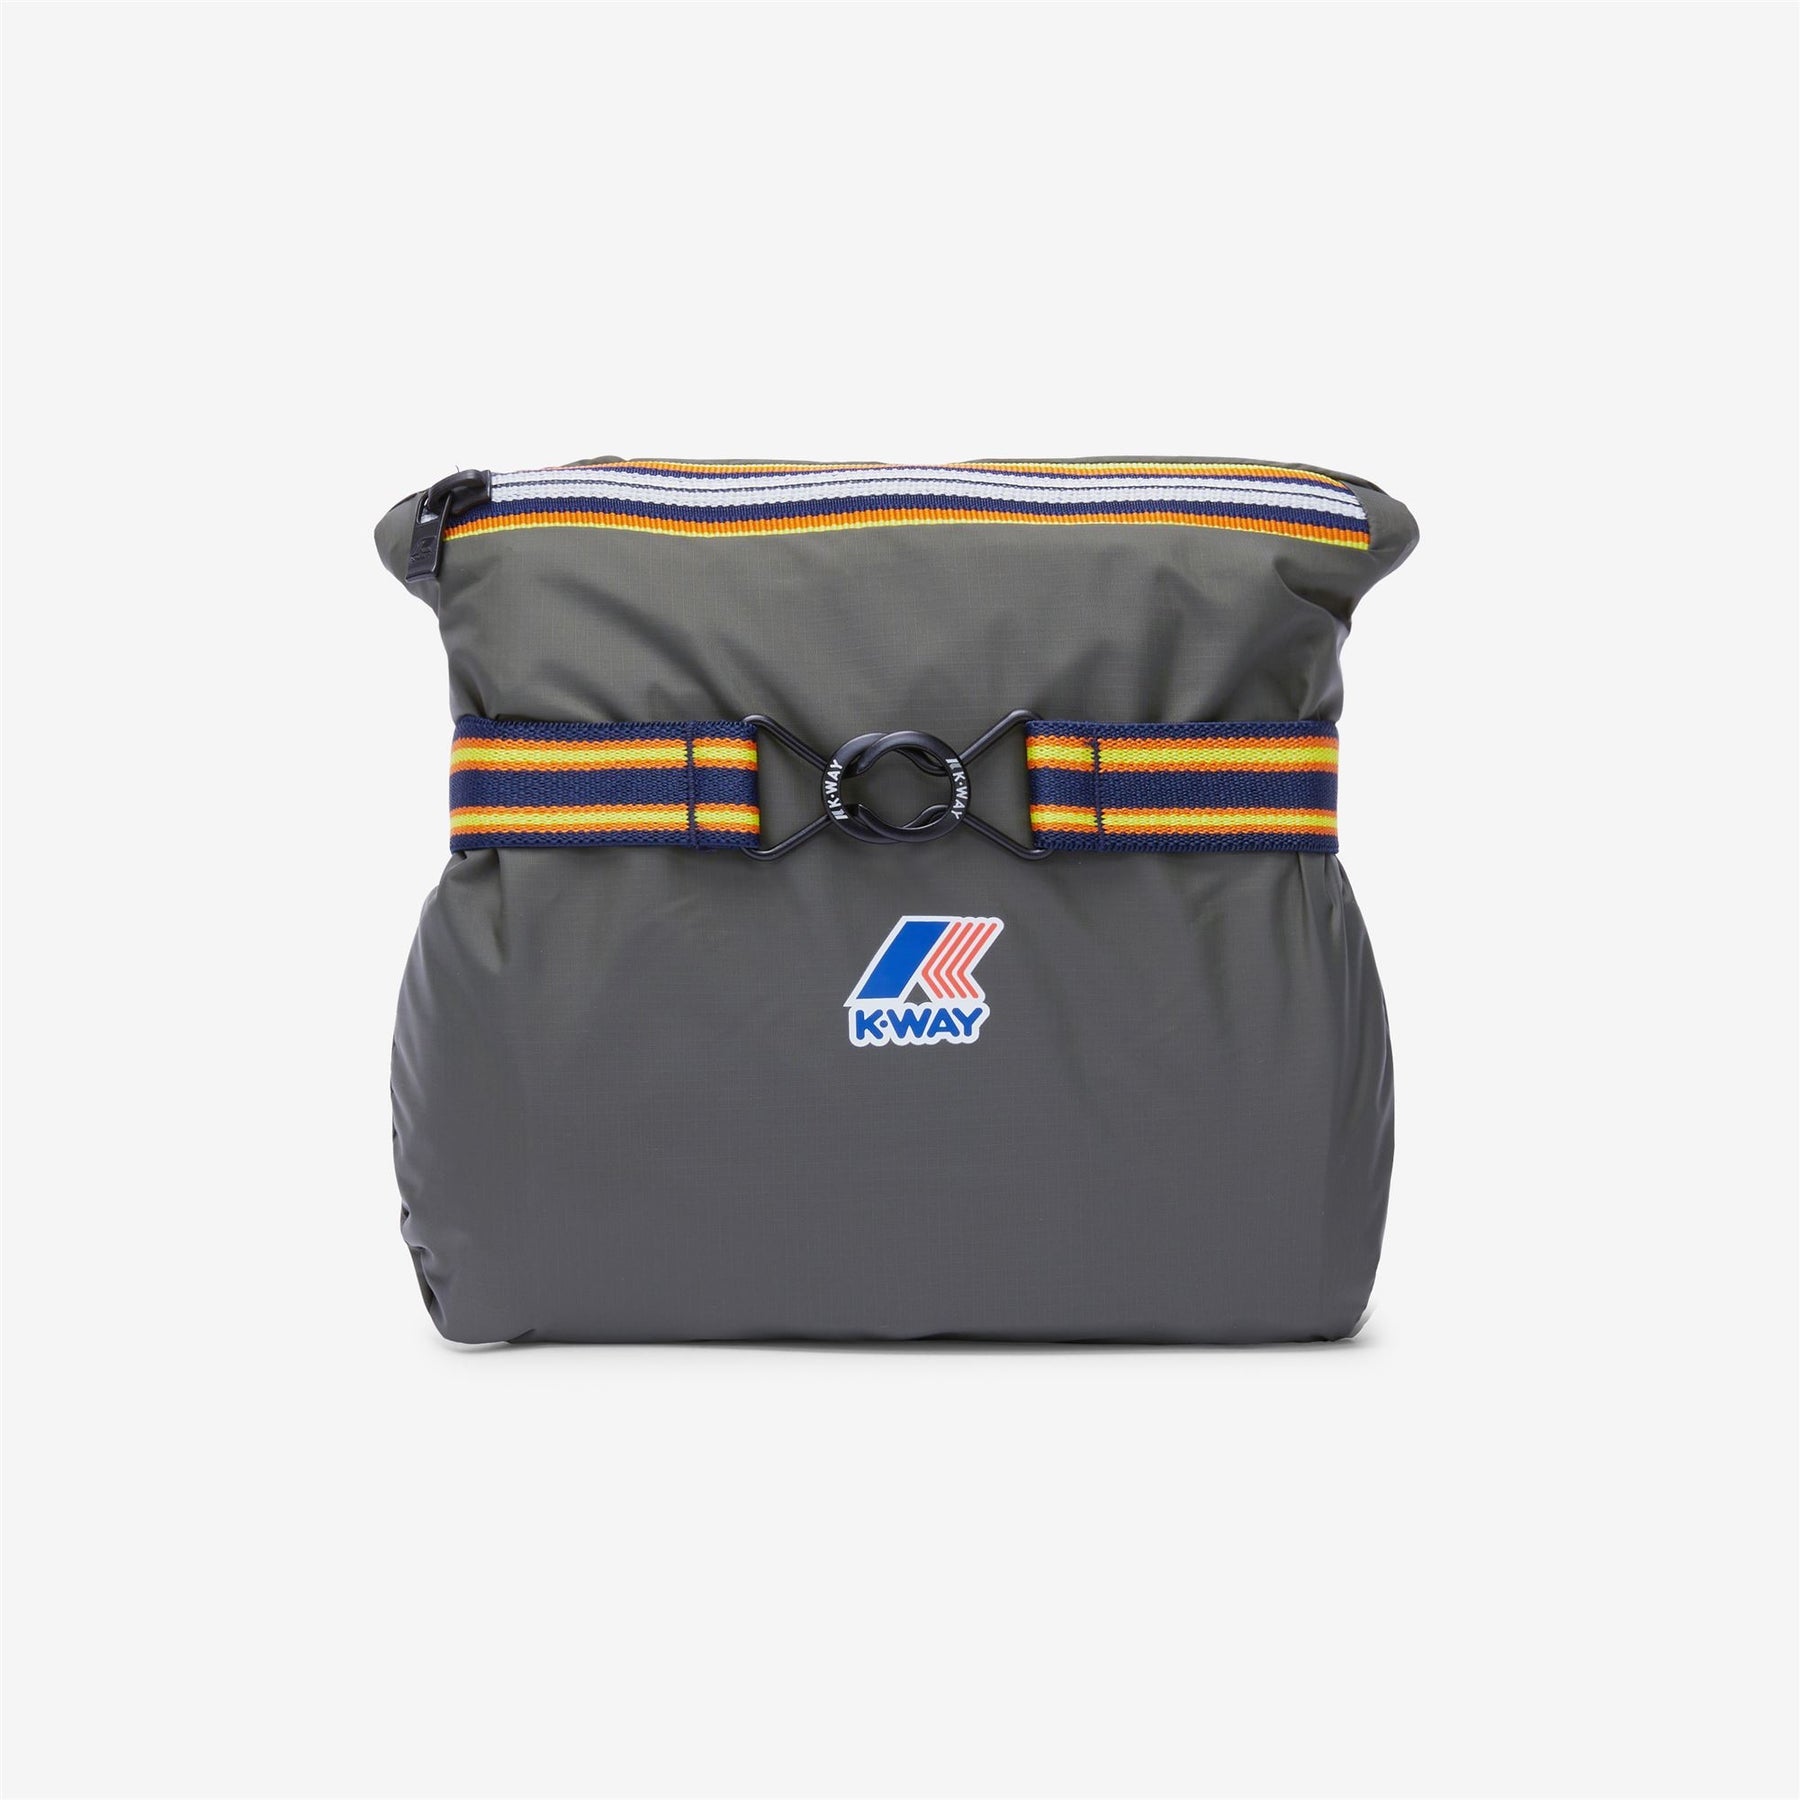 Claude - Unisex Packable Full Zip Waterproof  Rain Jacket in Grey Smoked